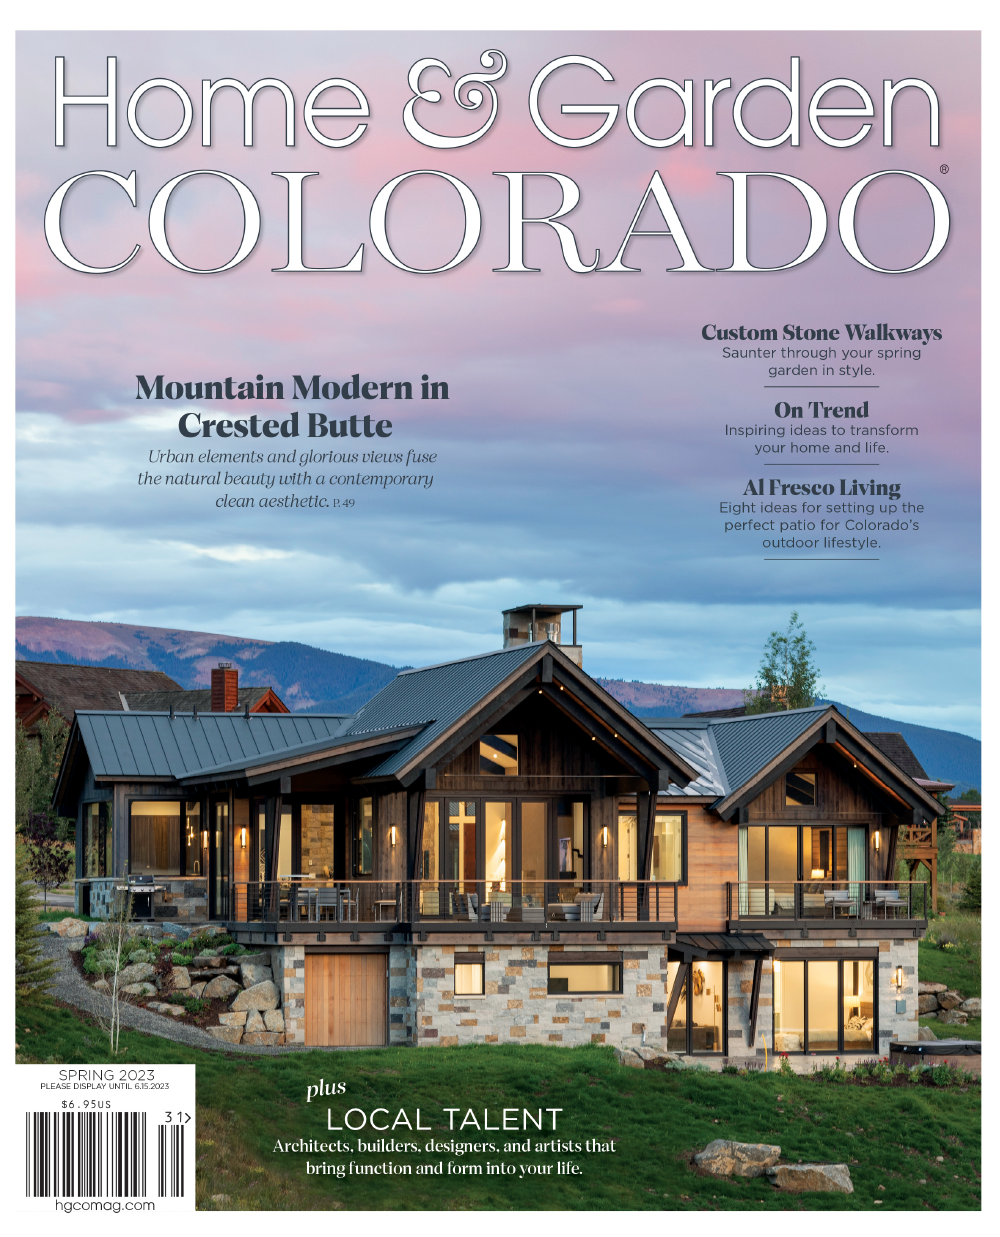 Home & Garden Colorado 2023 Magazine Cover